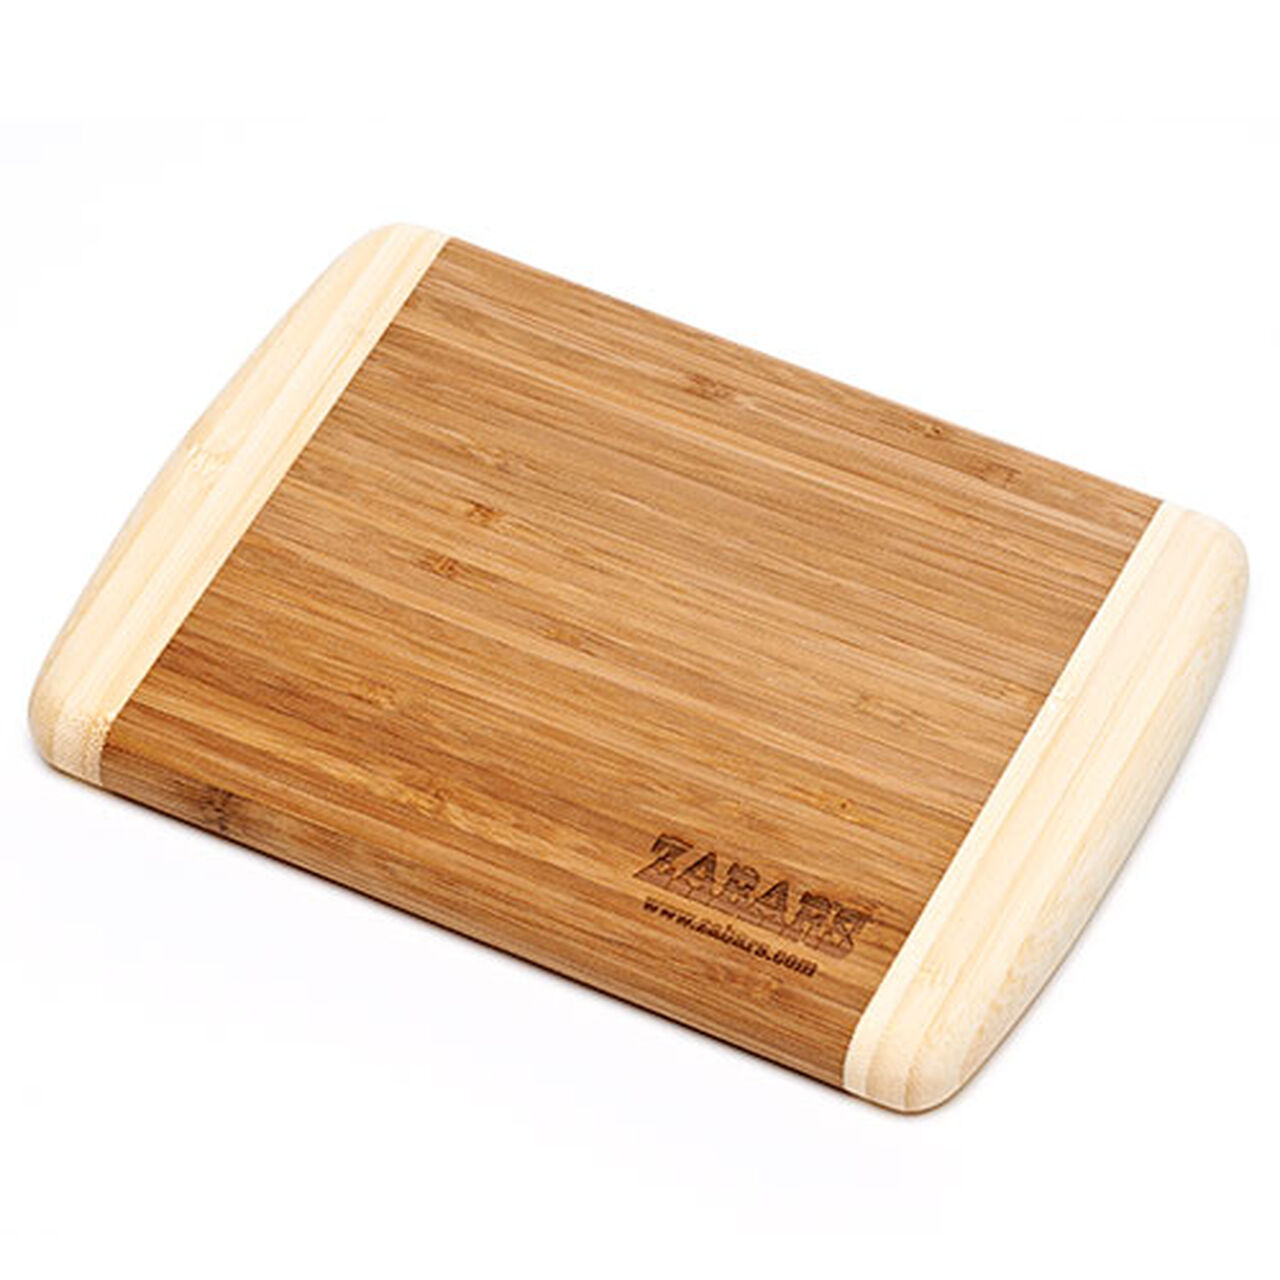 Zabar's Bamboo Bar Cutting Board - #20-1289, , large image number 0